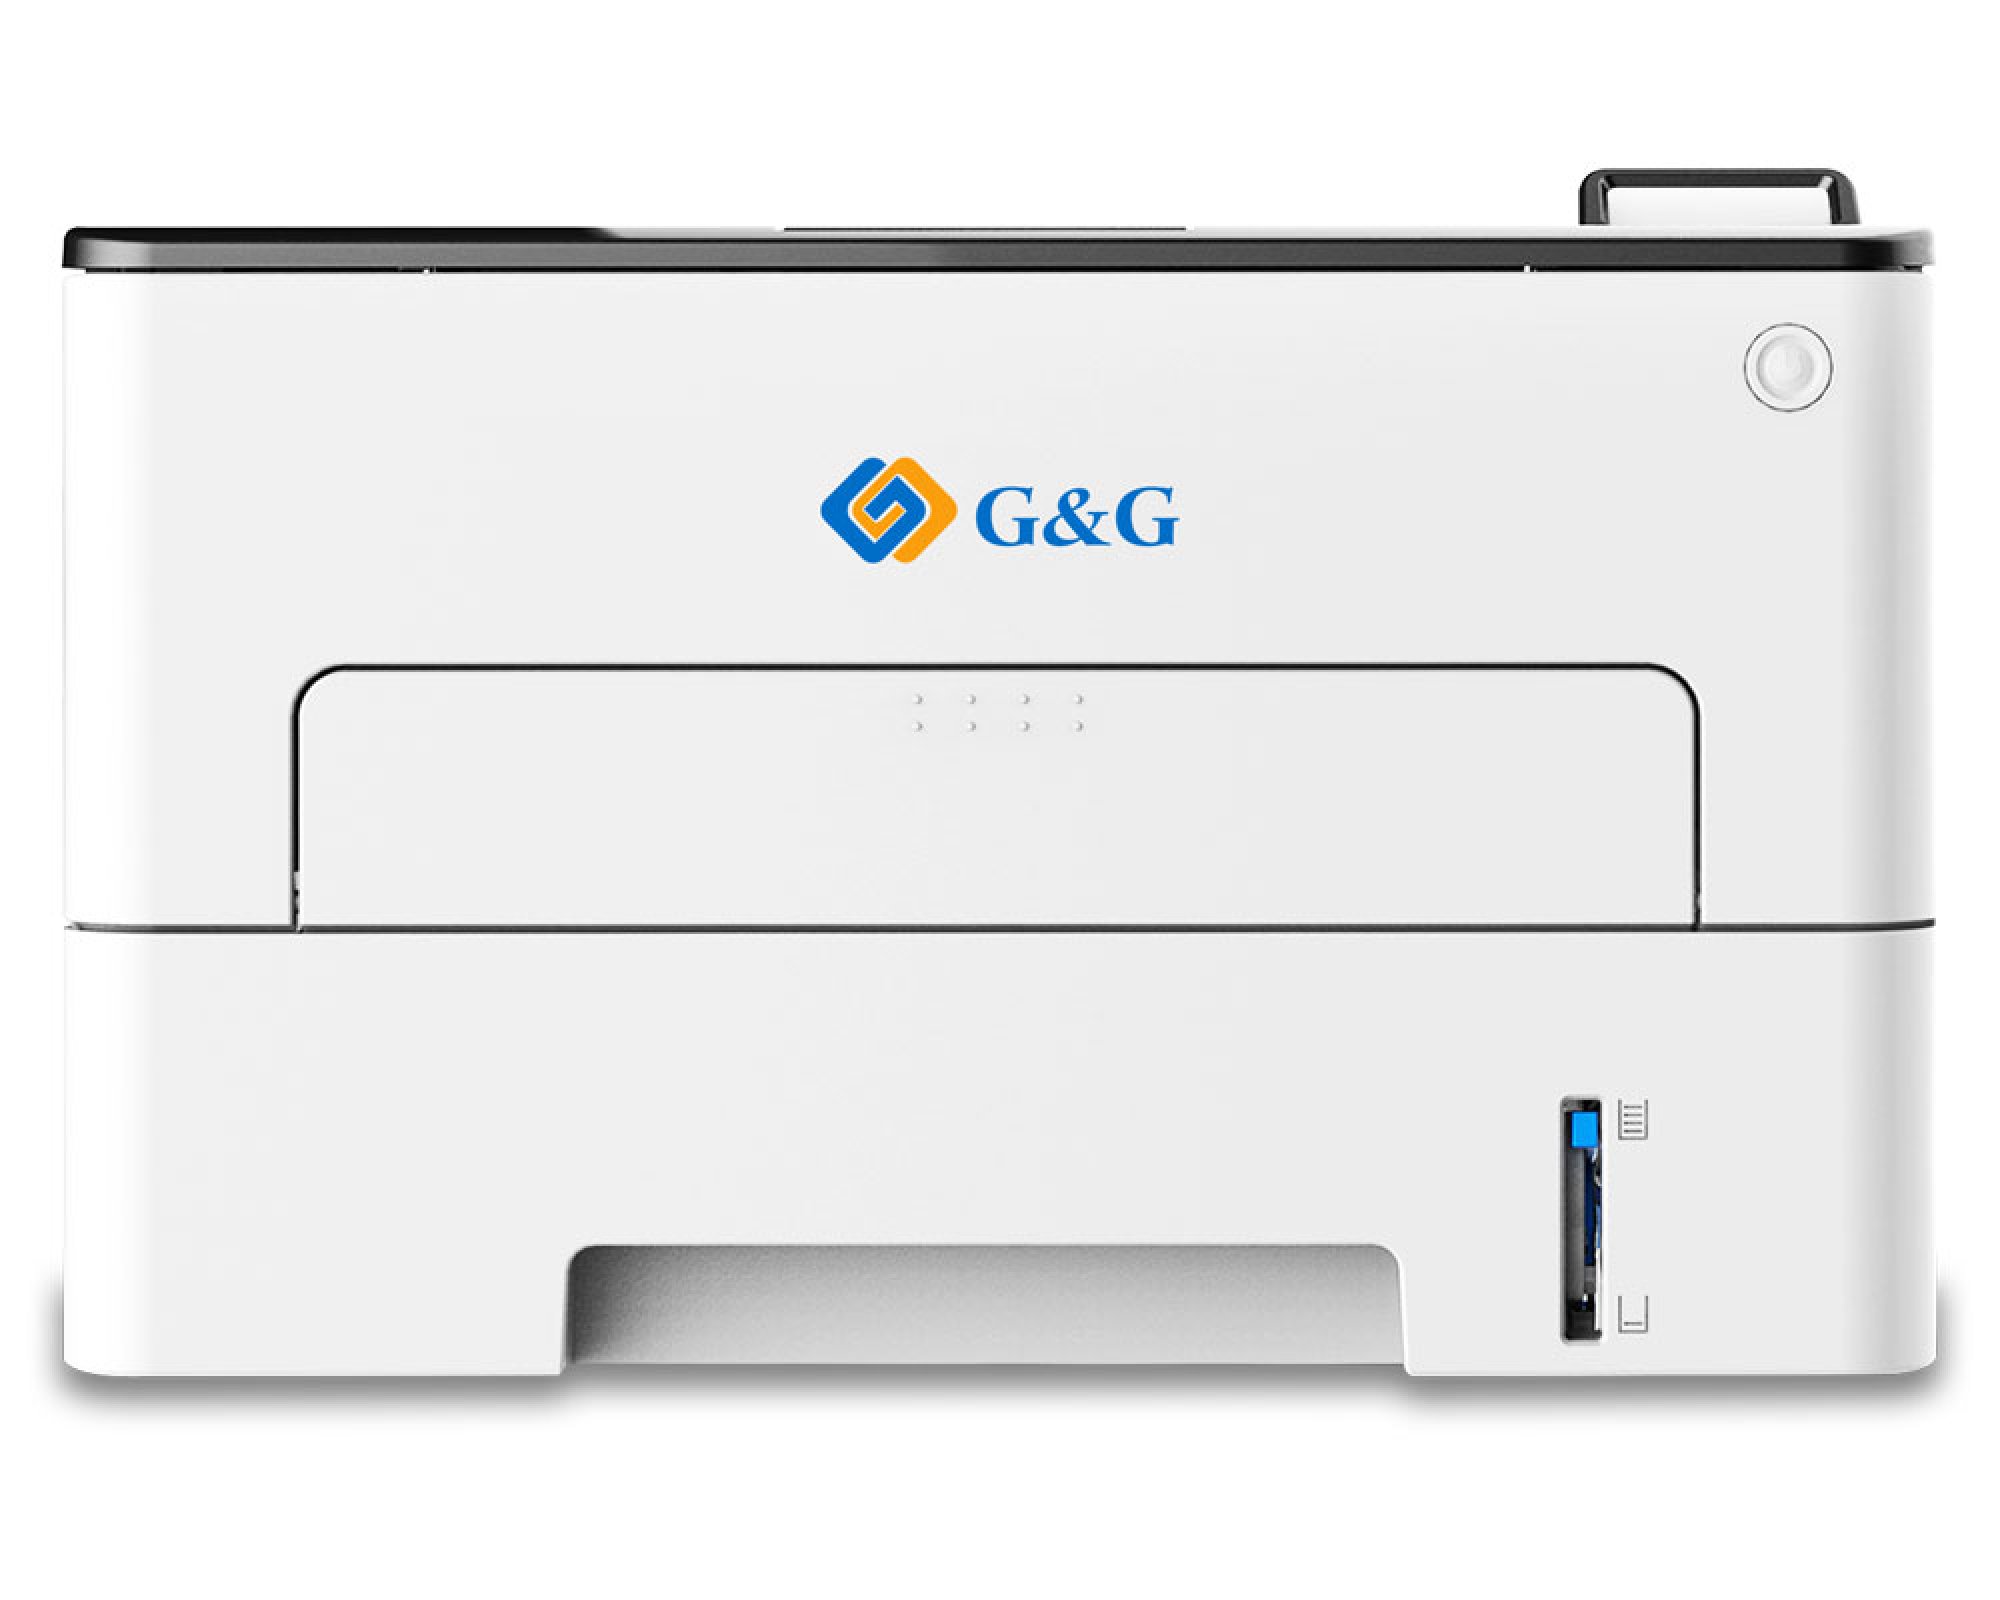 G&G P4100DW s/w Laserdrucker 33 Seiten/ Min. Duplex, Netzwerkdrucker